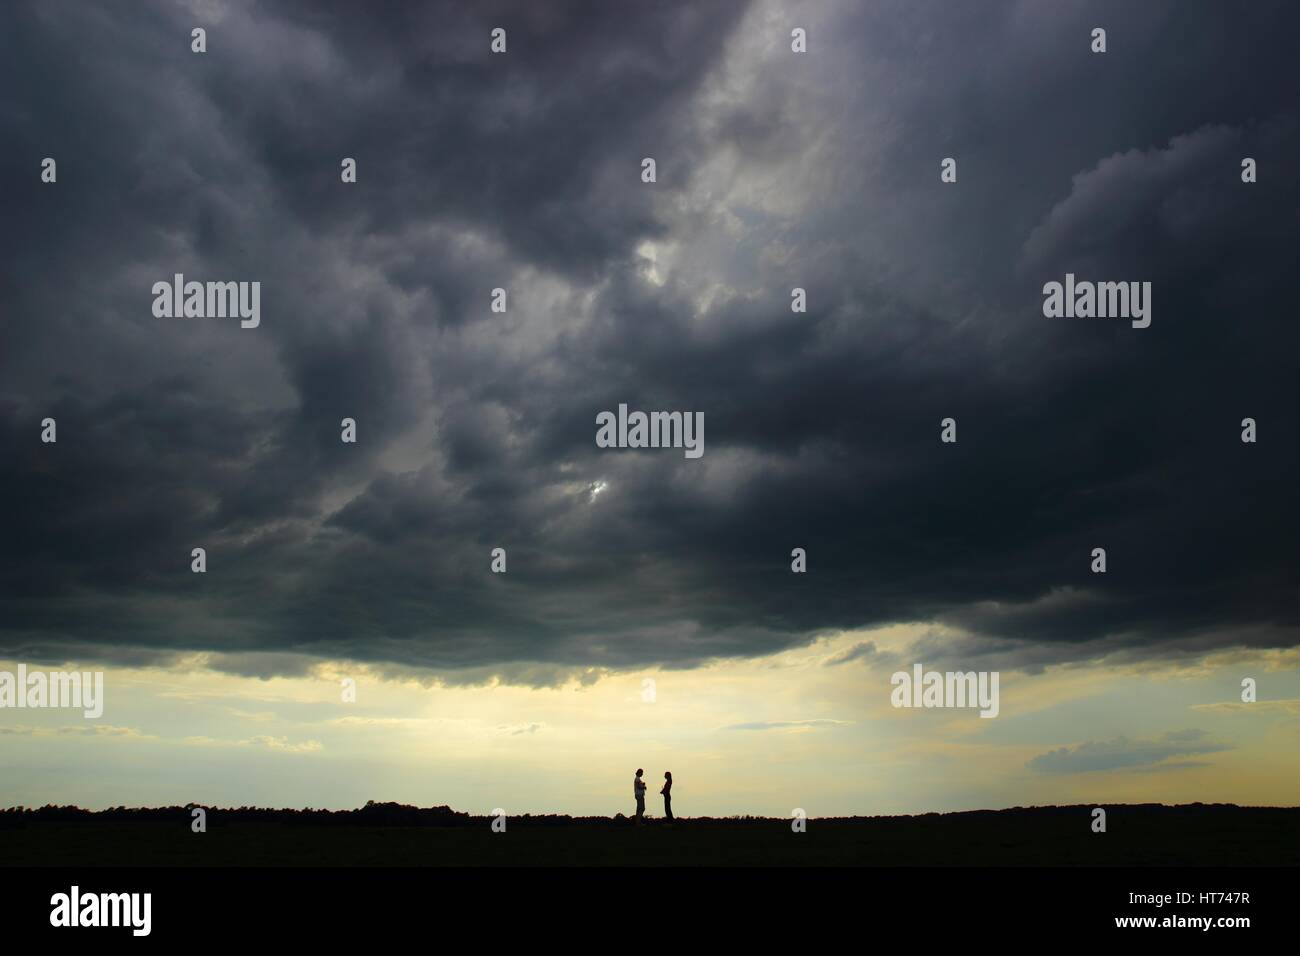 Personas de remolque en el horizonte, bajo el cielo tormentoso en Back light Foto de stock